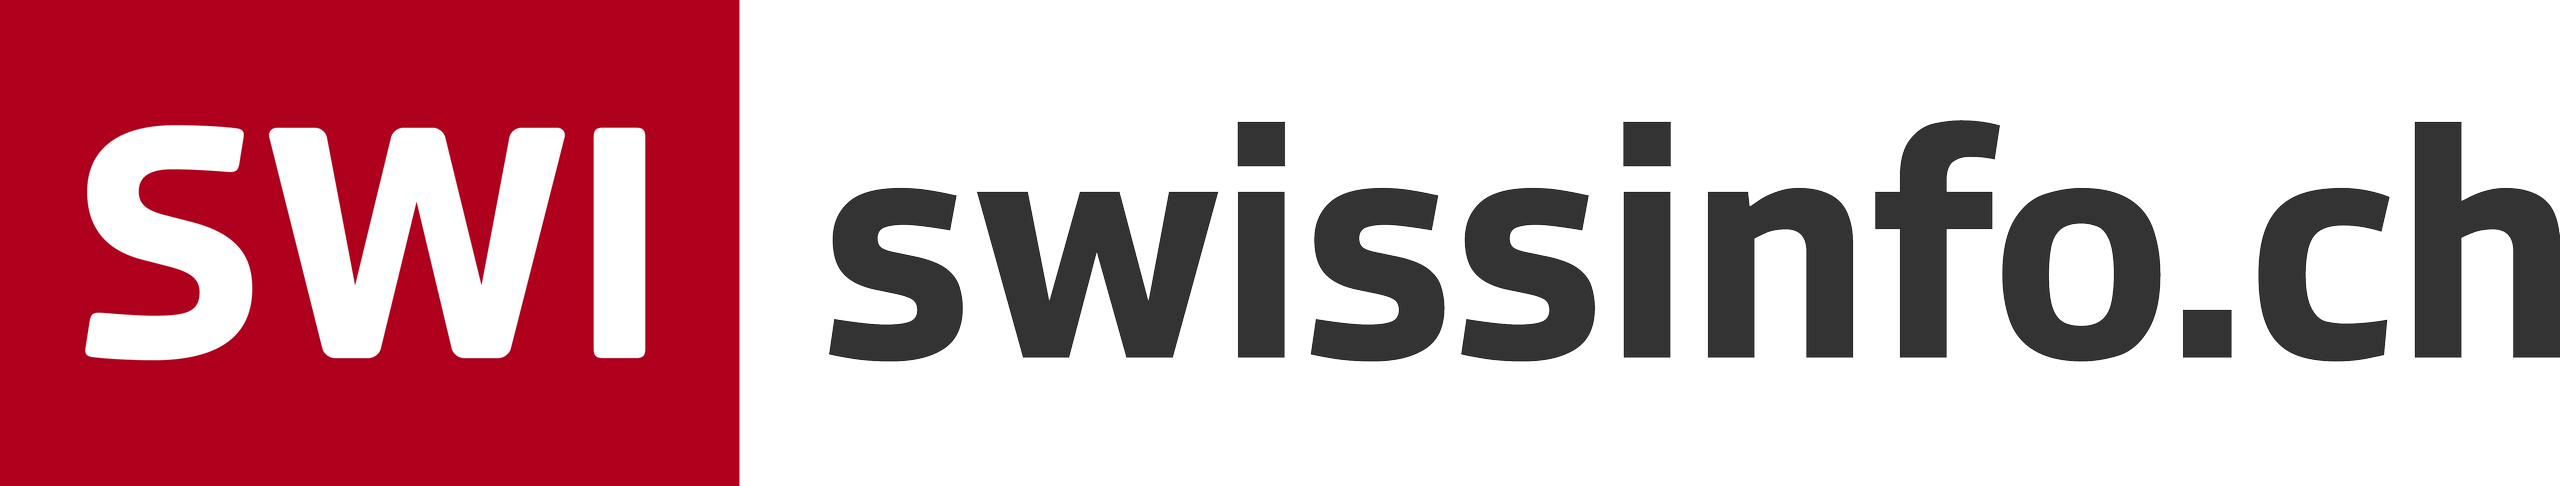 SWI swissinfo.ch-Logo